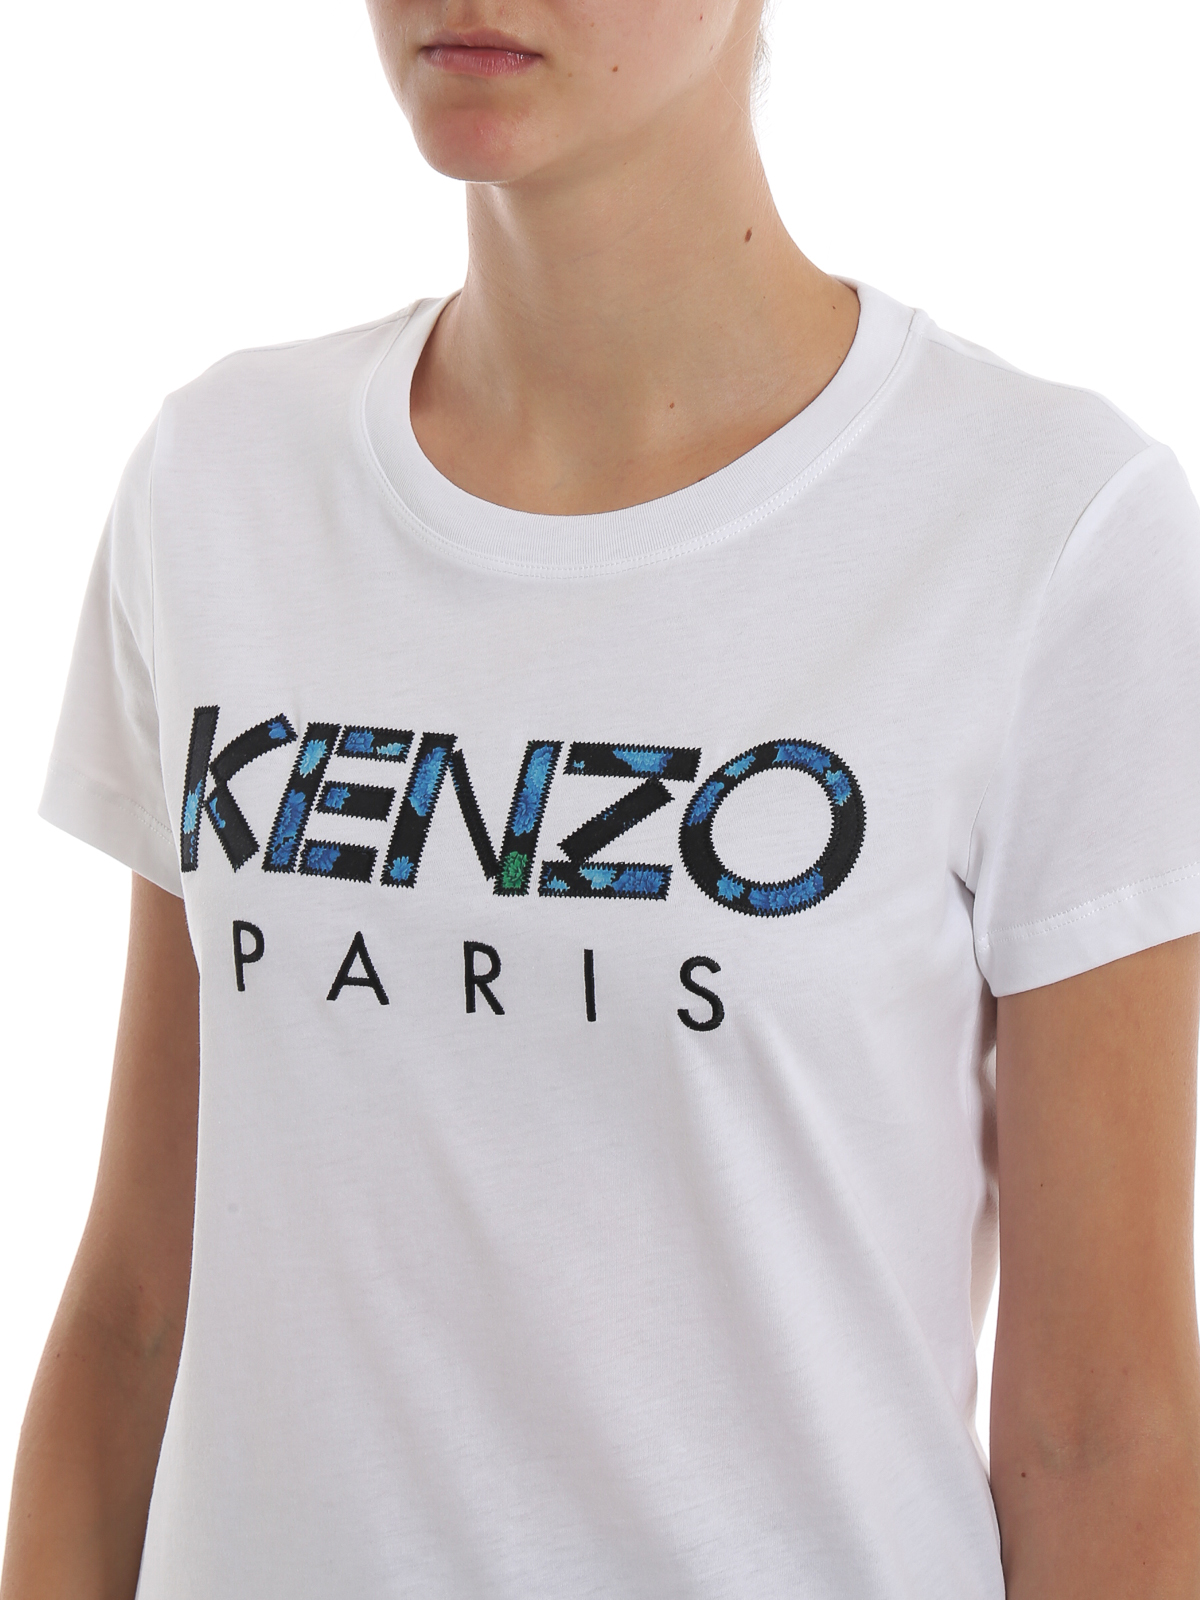 kenzo slim fit t shirt